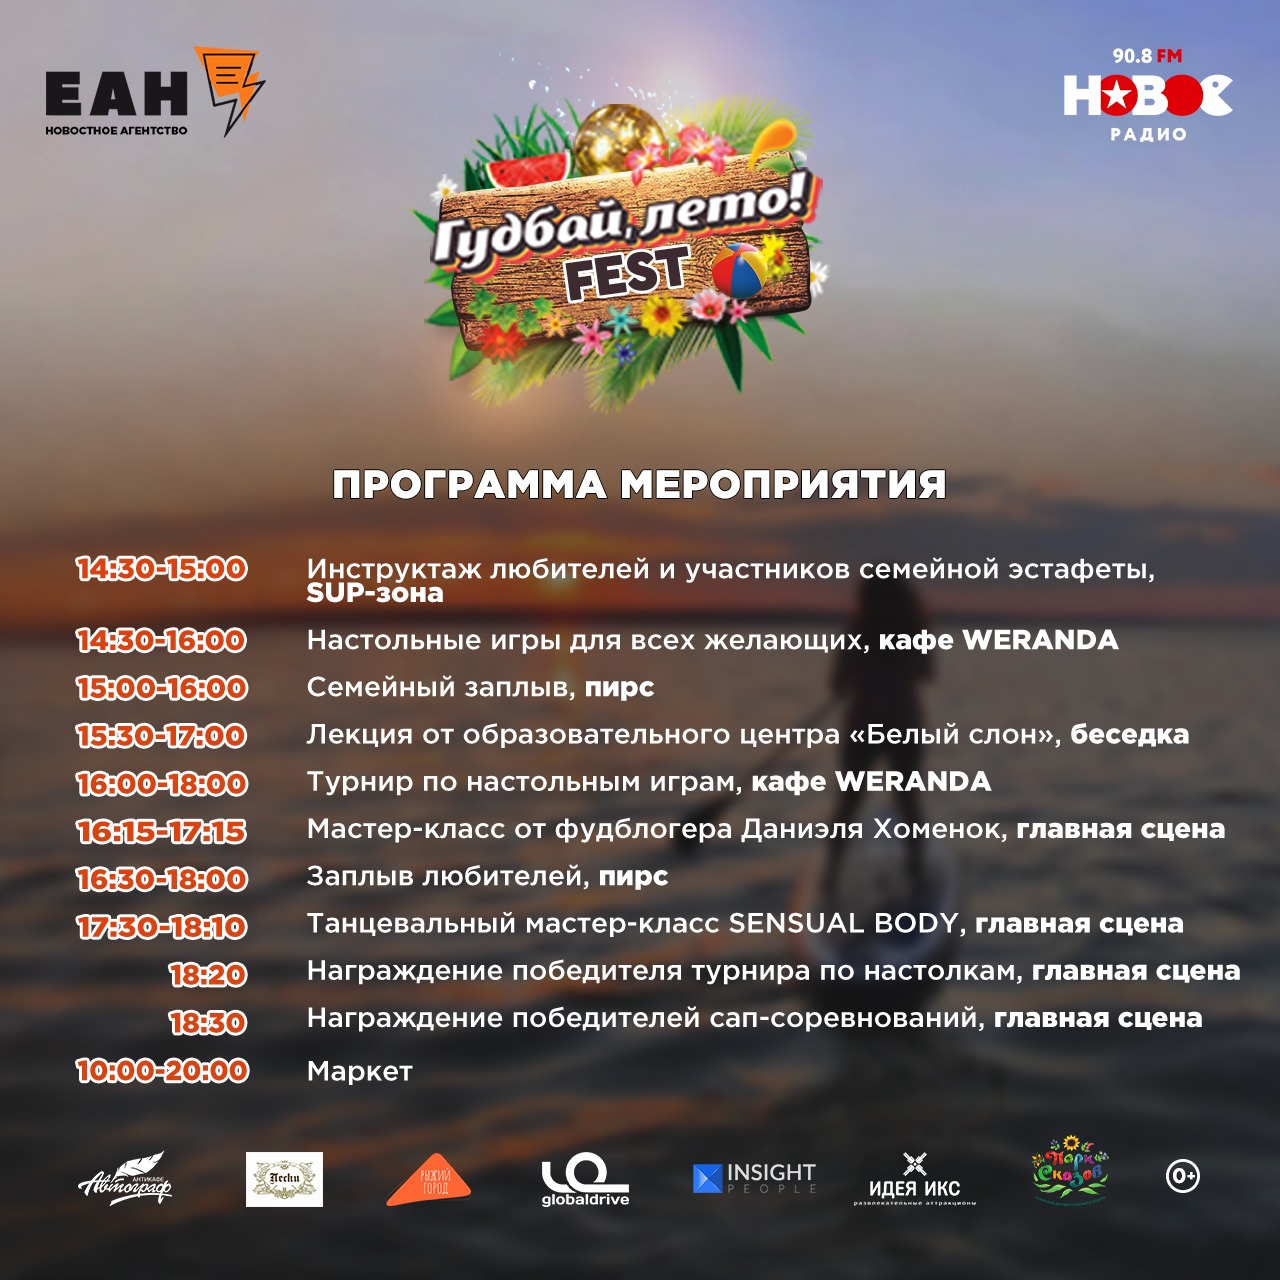 Программа фестиваля «Гудбай, лето! FEST». Озеро Шарташ